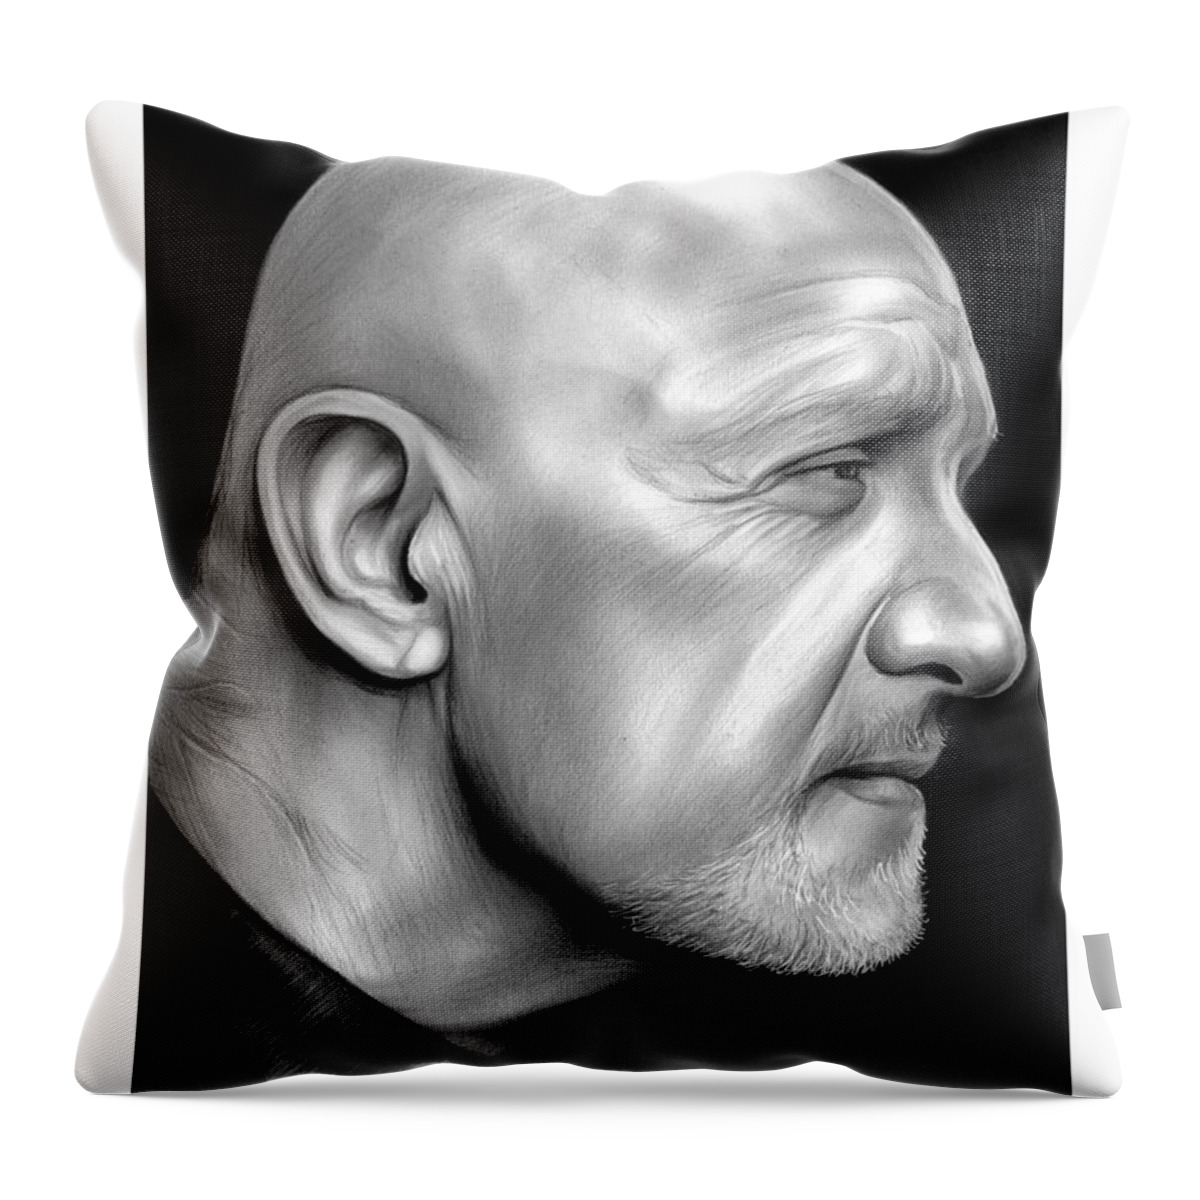 Jonathan Banks Throw Pillow featuring the drawing Jonathan Banks by Greg Joens